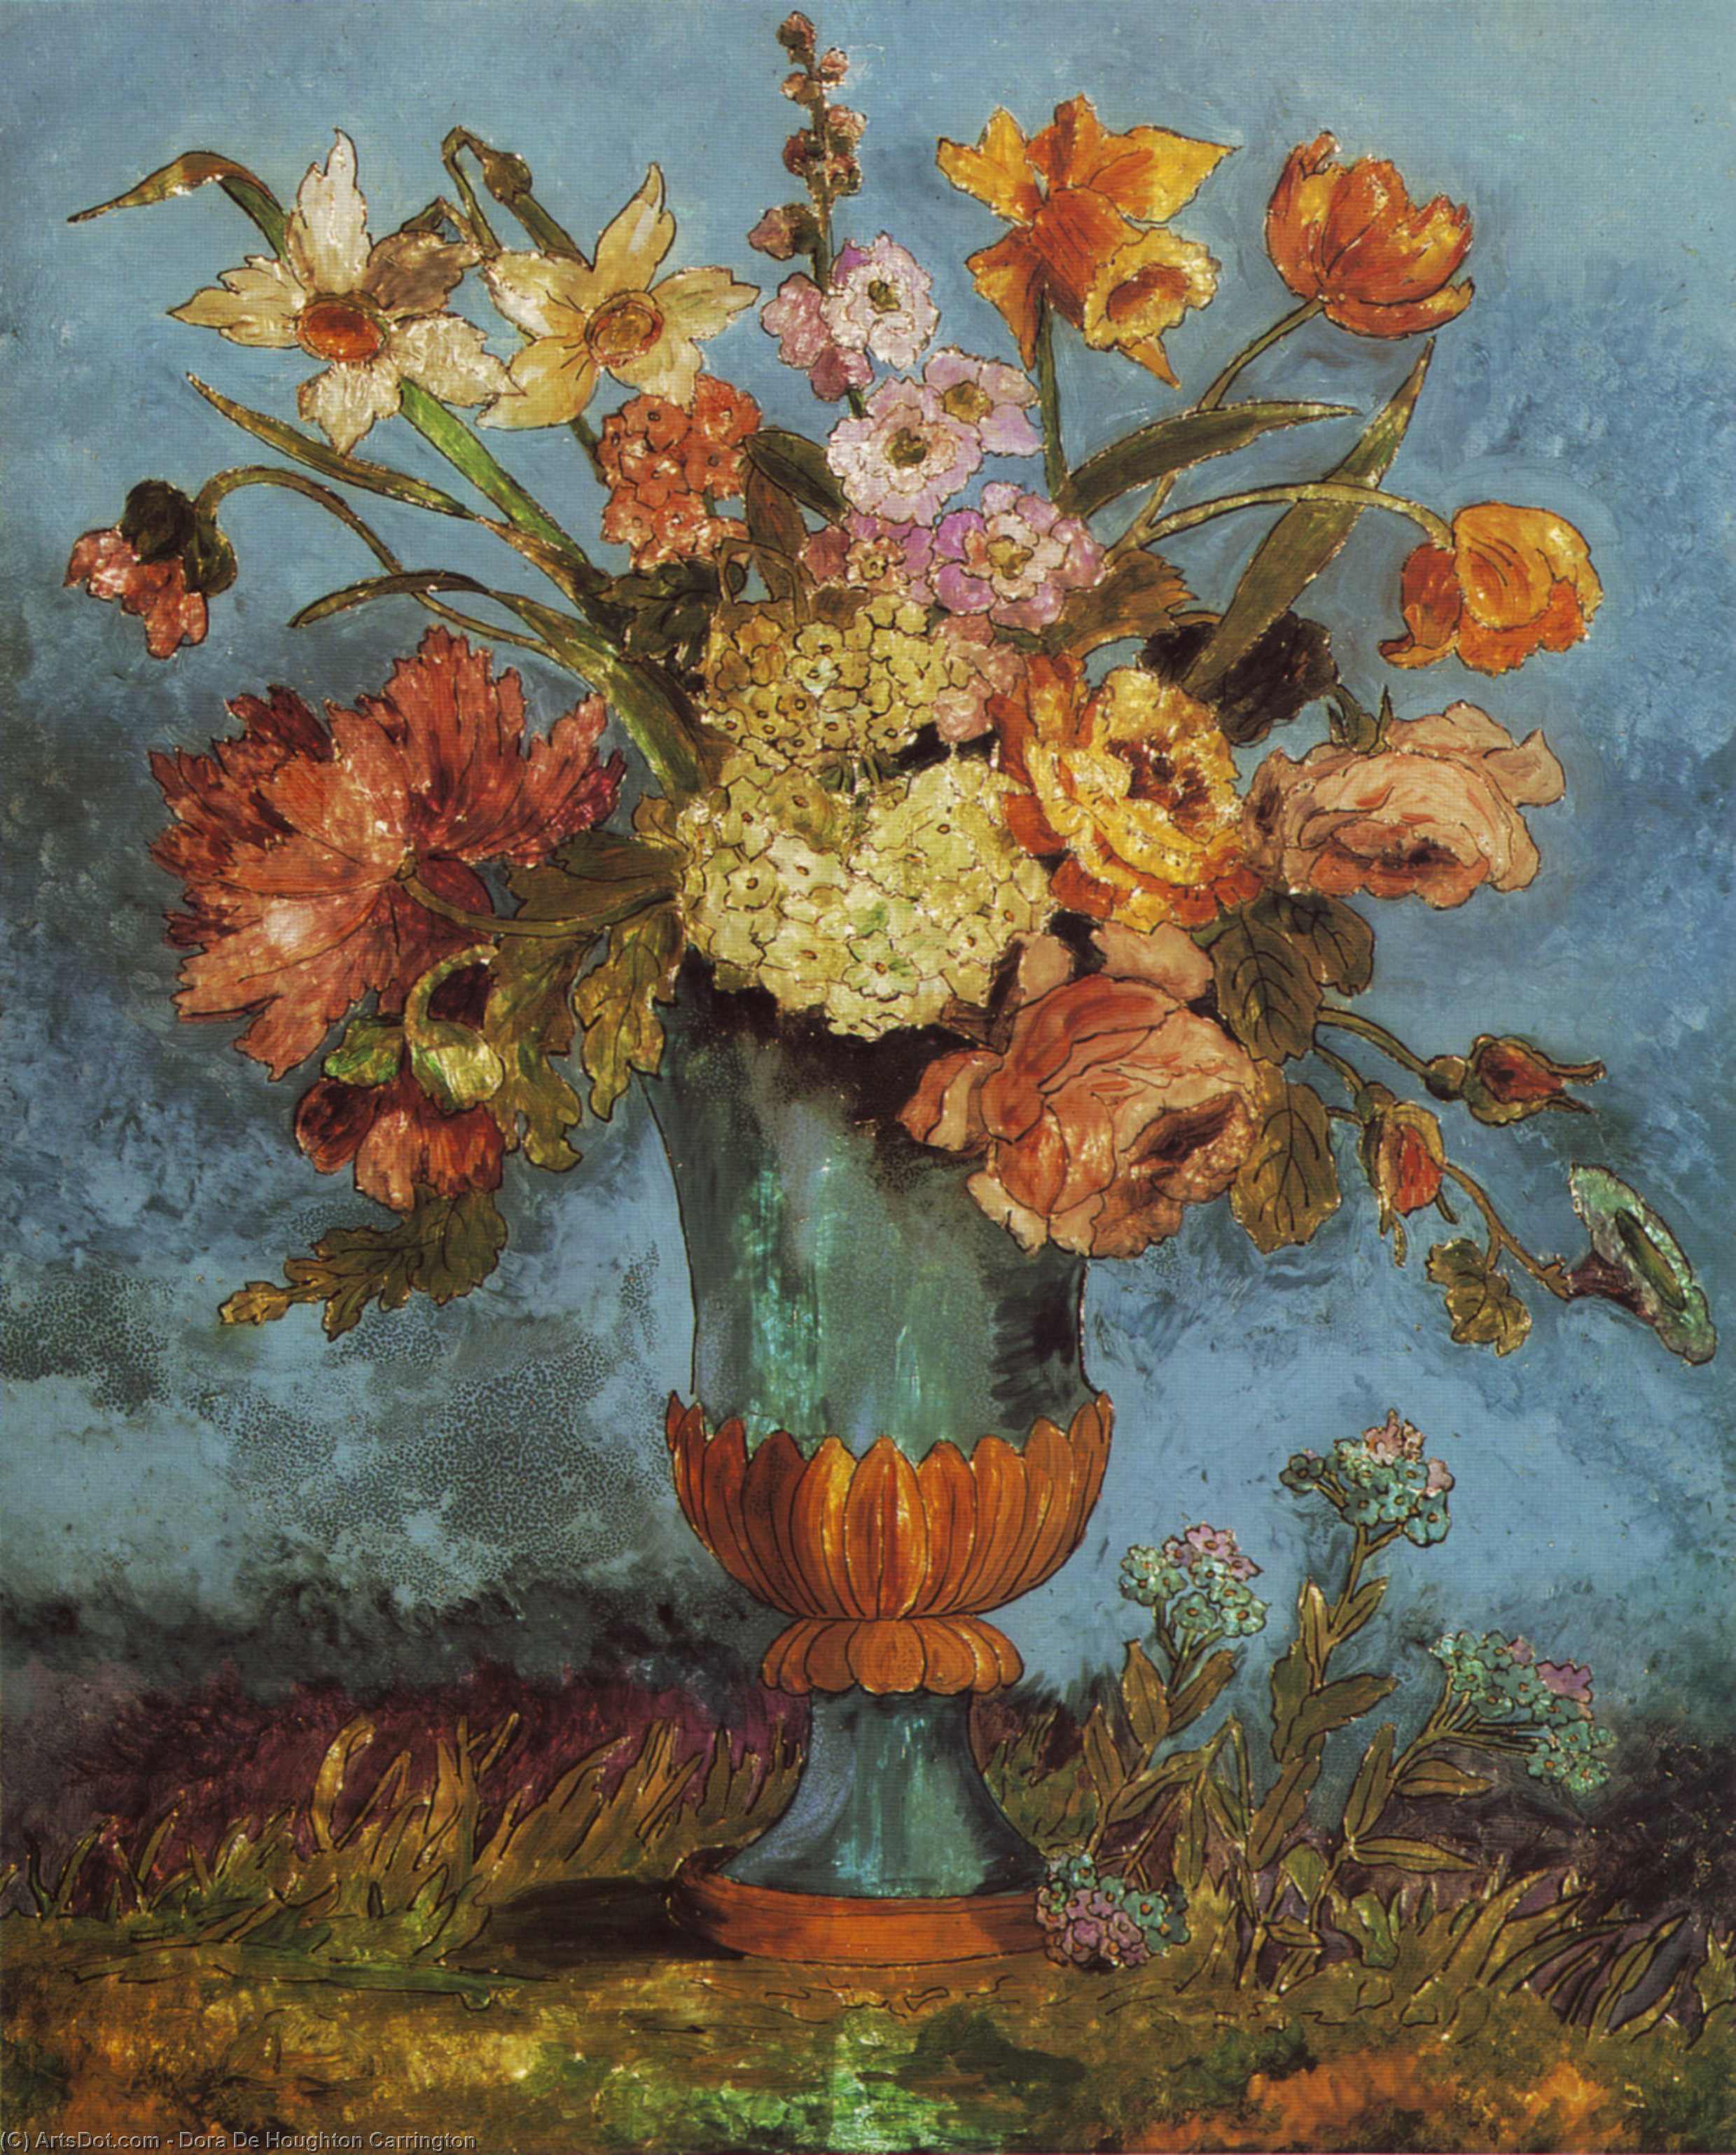 WikiOO.org - Güzel Sanatlar Ansiklopedisi - Resim, Resimler Dora De Houghton Carrington - Flowerpiece